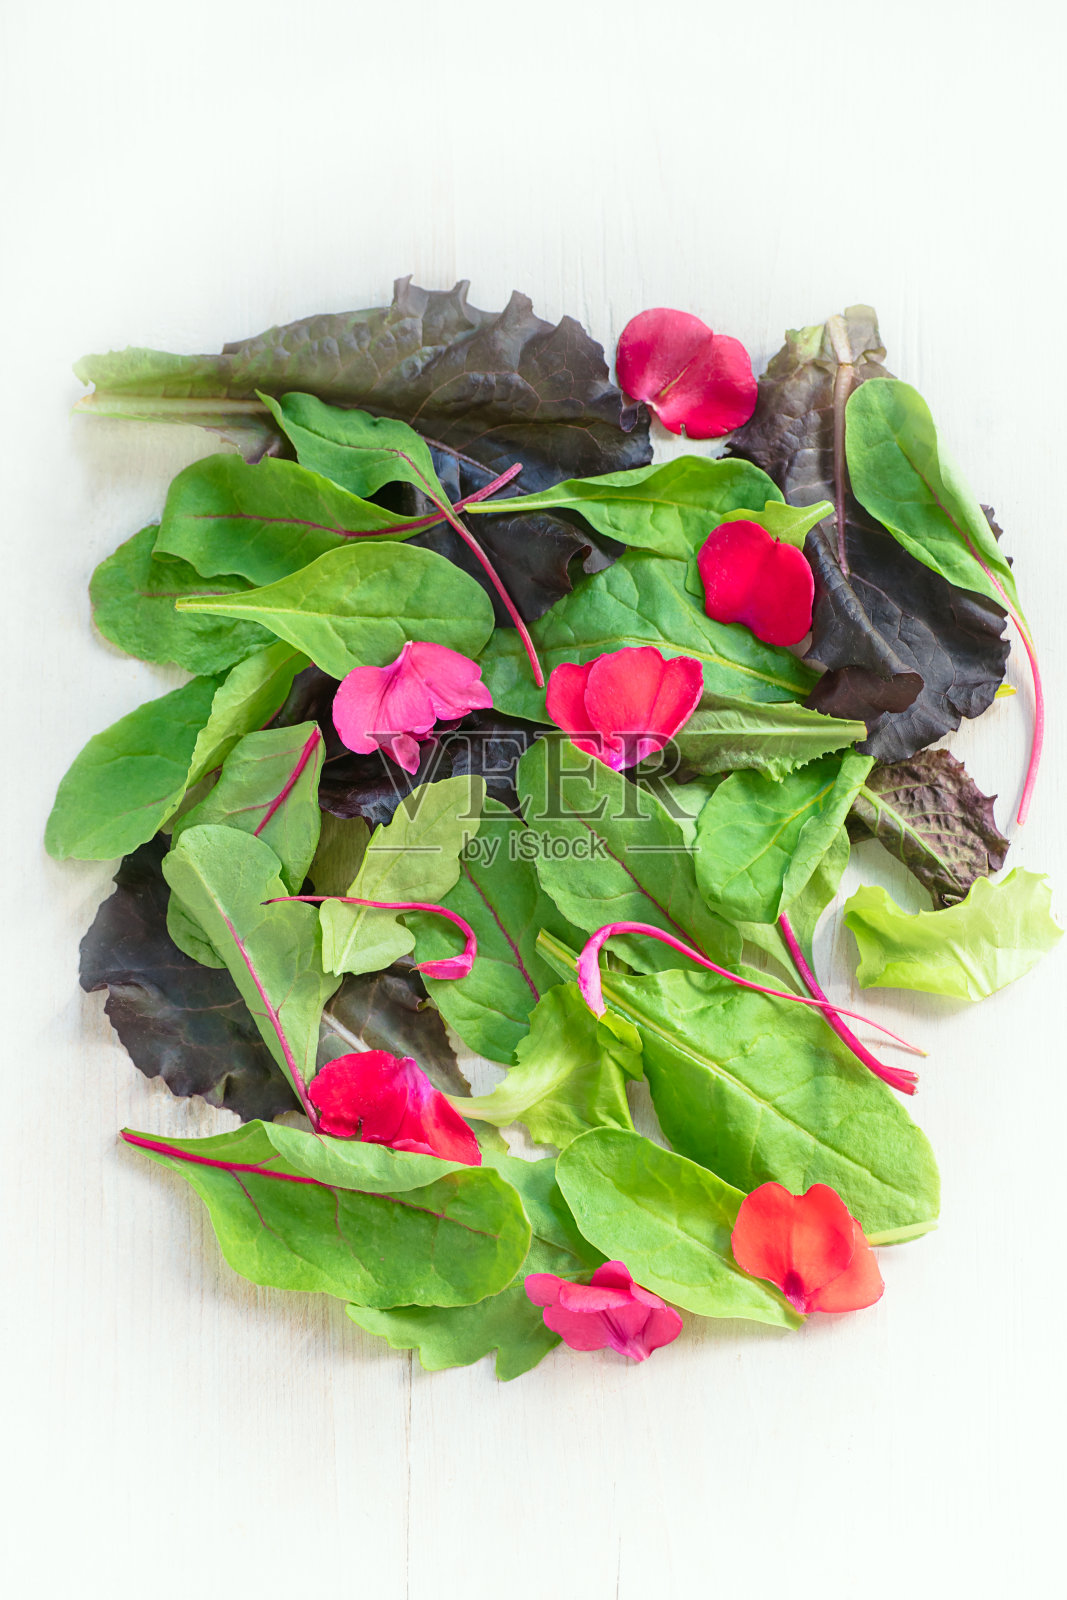 背景以不同种类的生菜、甜菜叶和花瓣为白色照片摄影图片